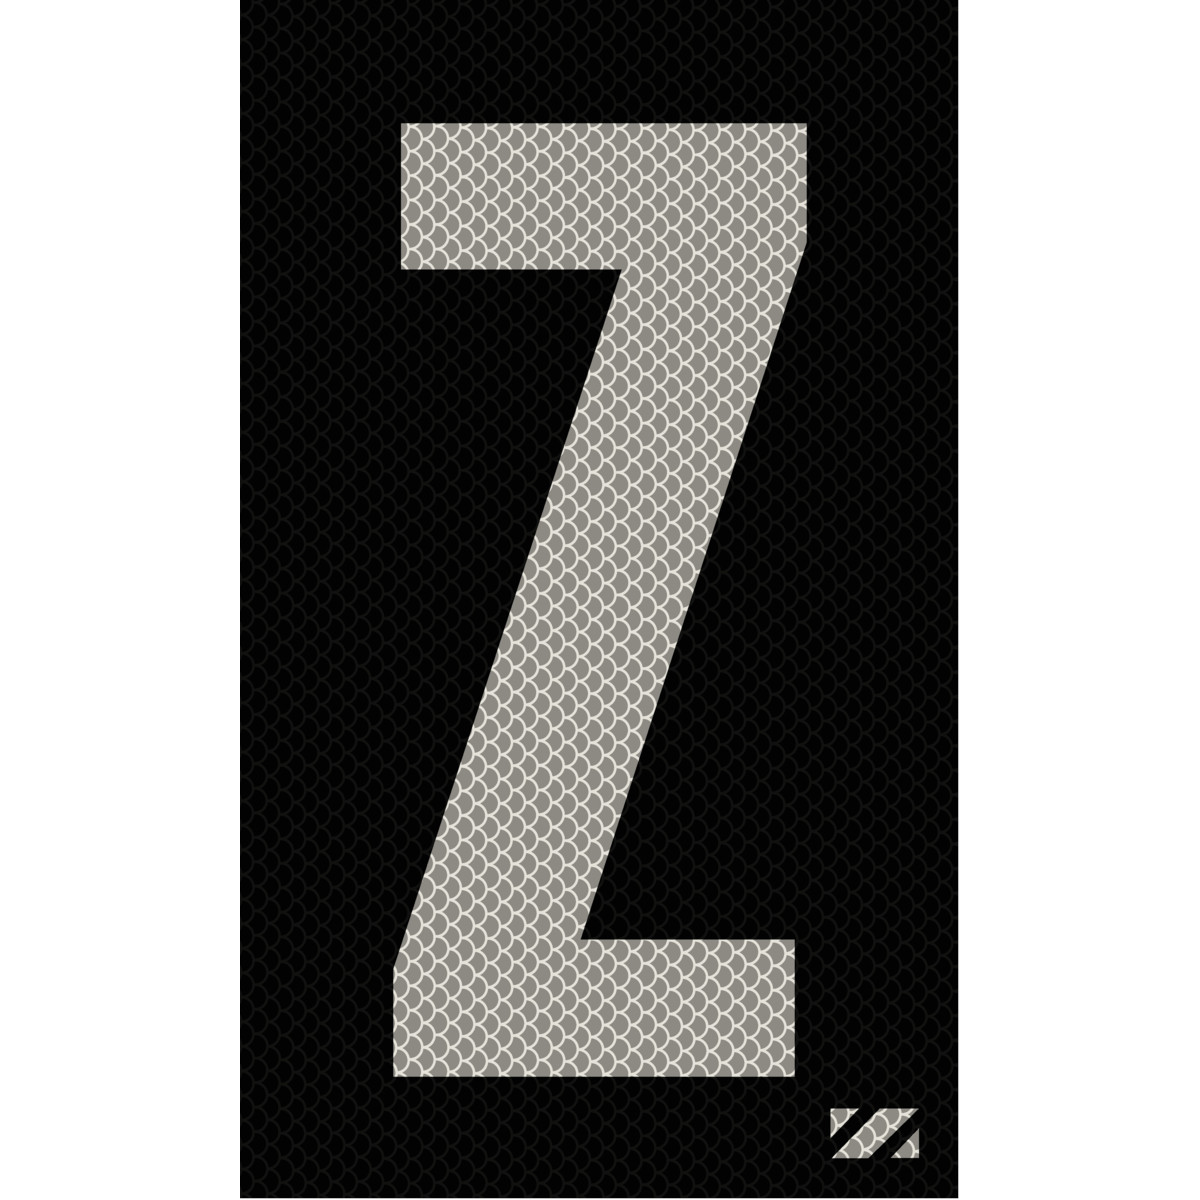 2" Silver on Black High Intensity Reflective "Z"